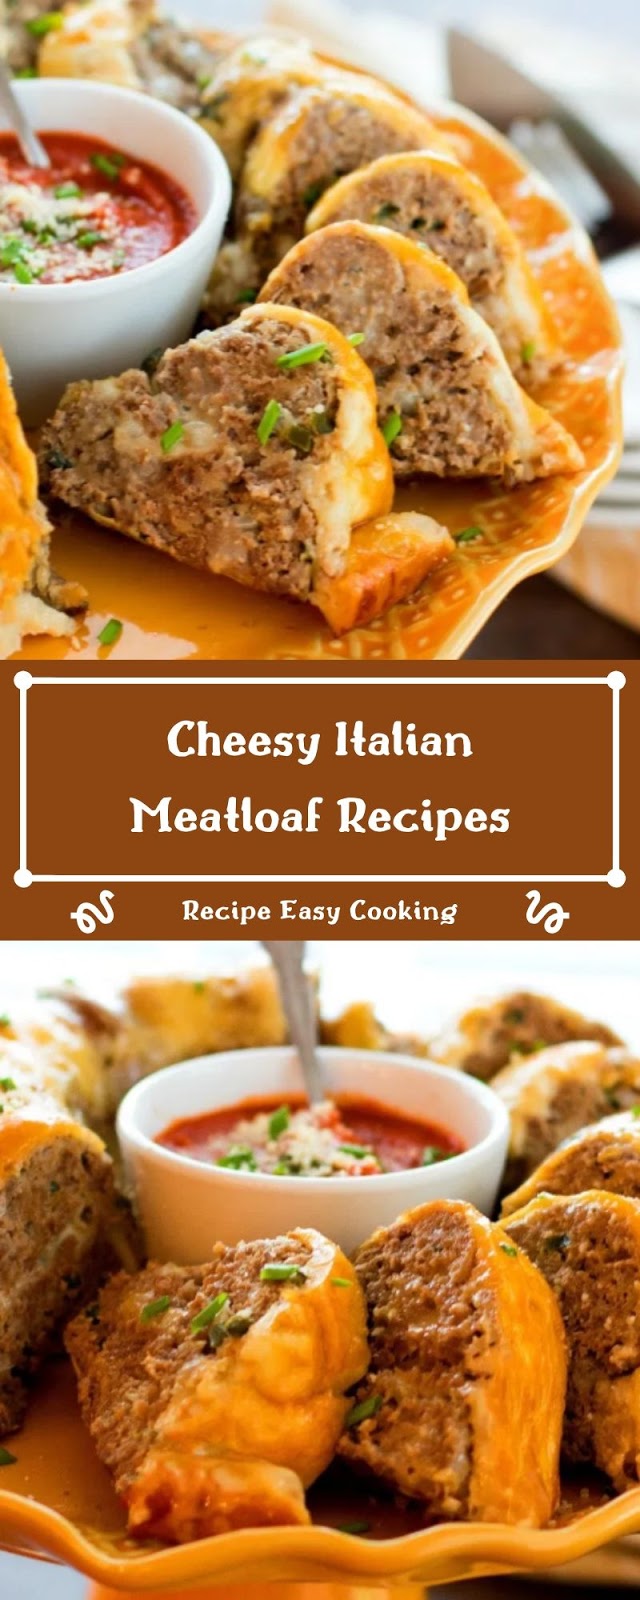 Cheesy Italian Meatloaf Recipes